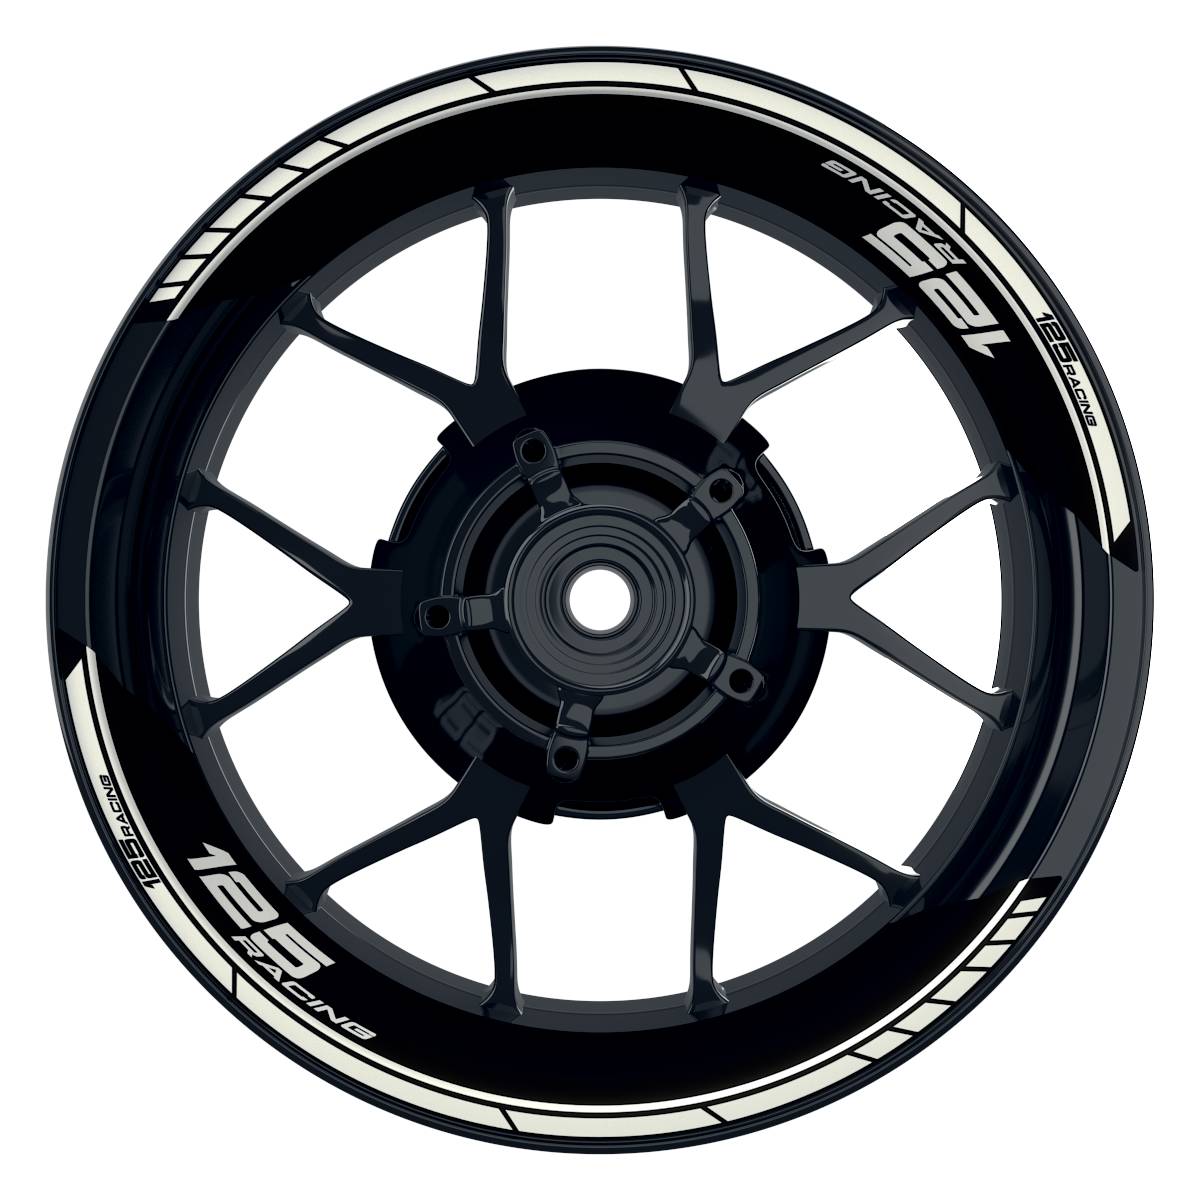 KTM Racing 125 Clean schwarz weiss Frontansicht